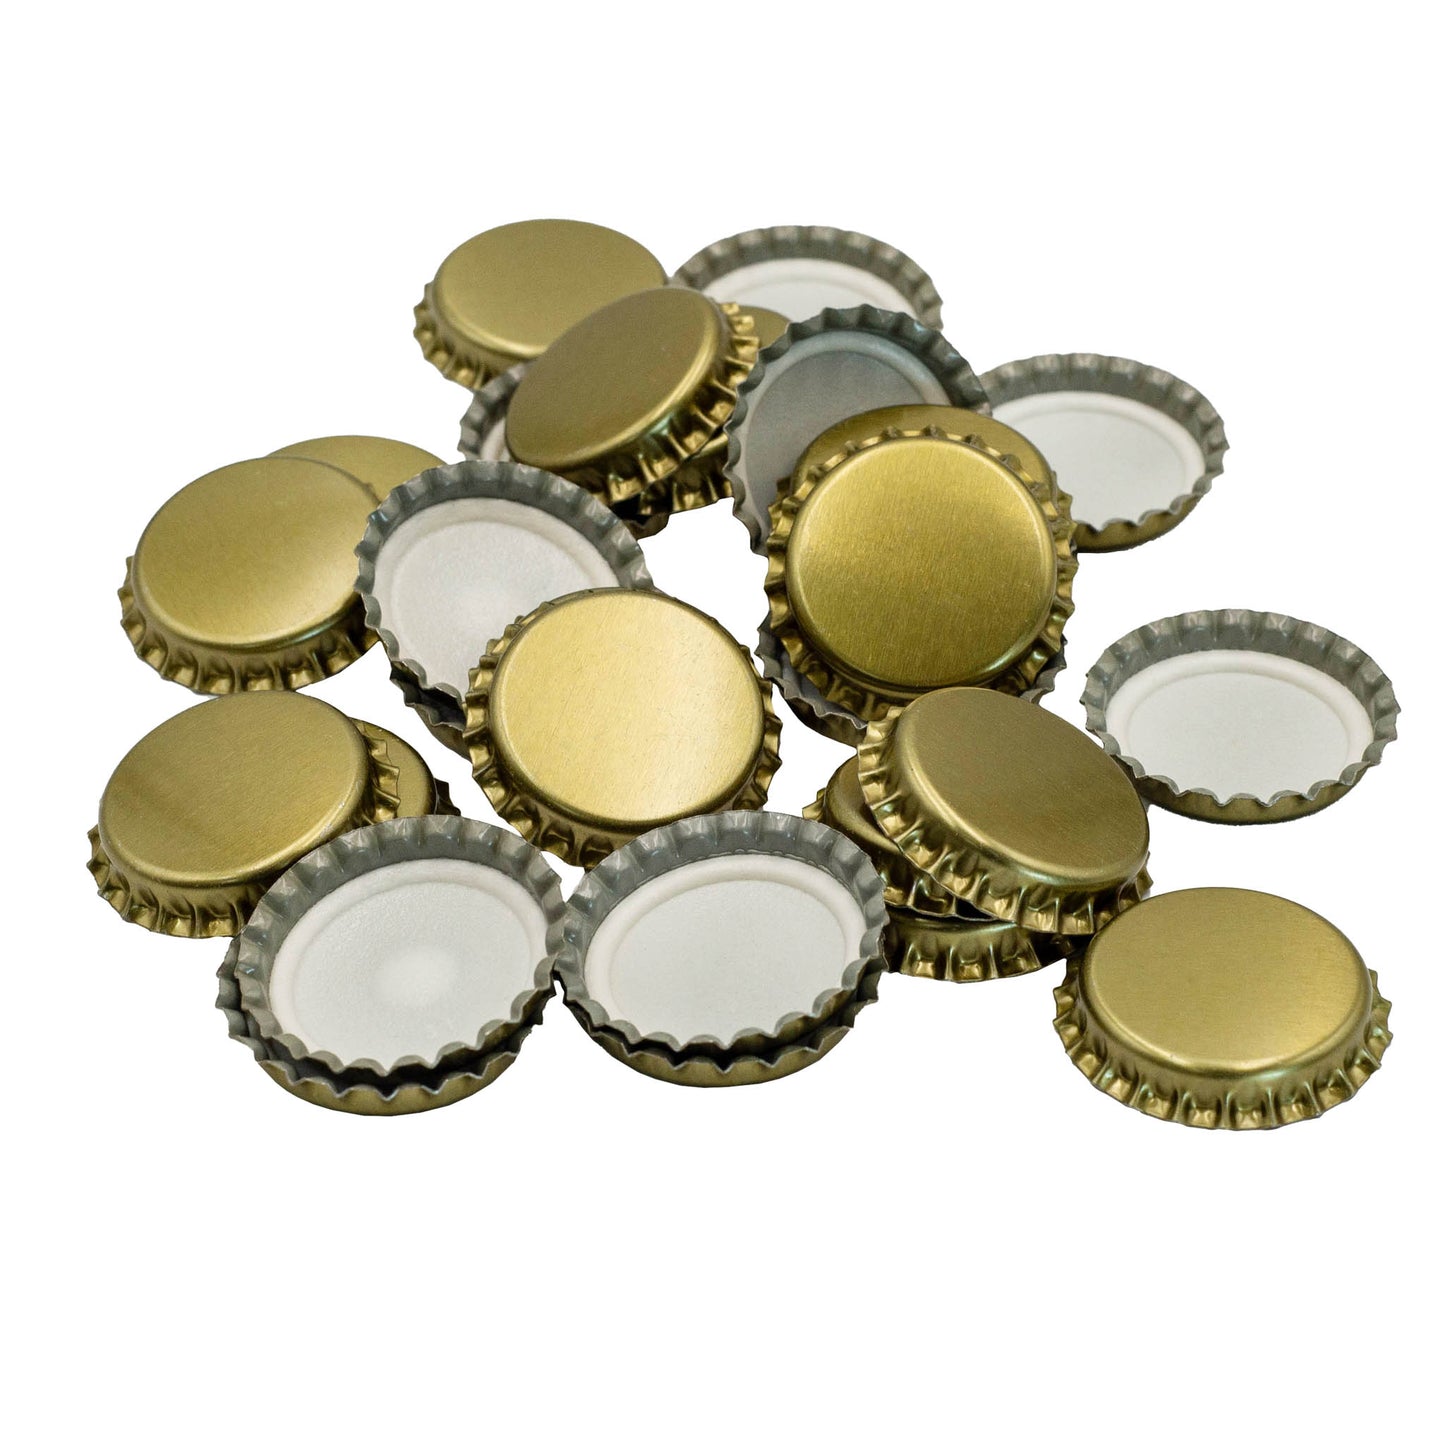 bag of 100 gold crown seal caps for beer bottles